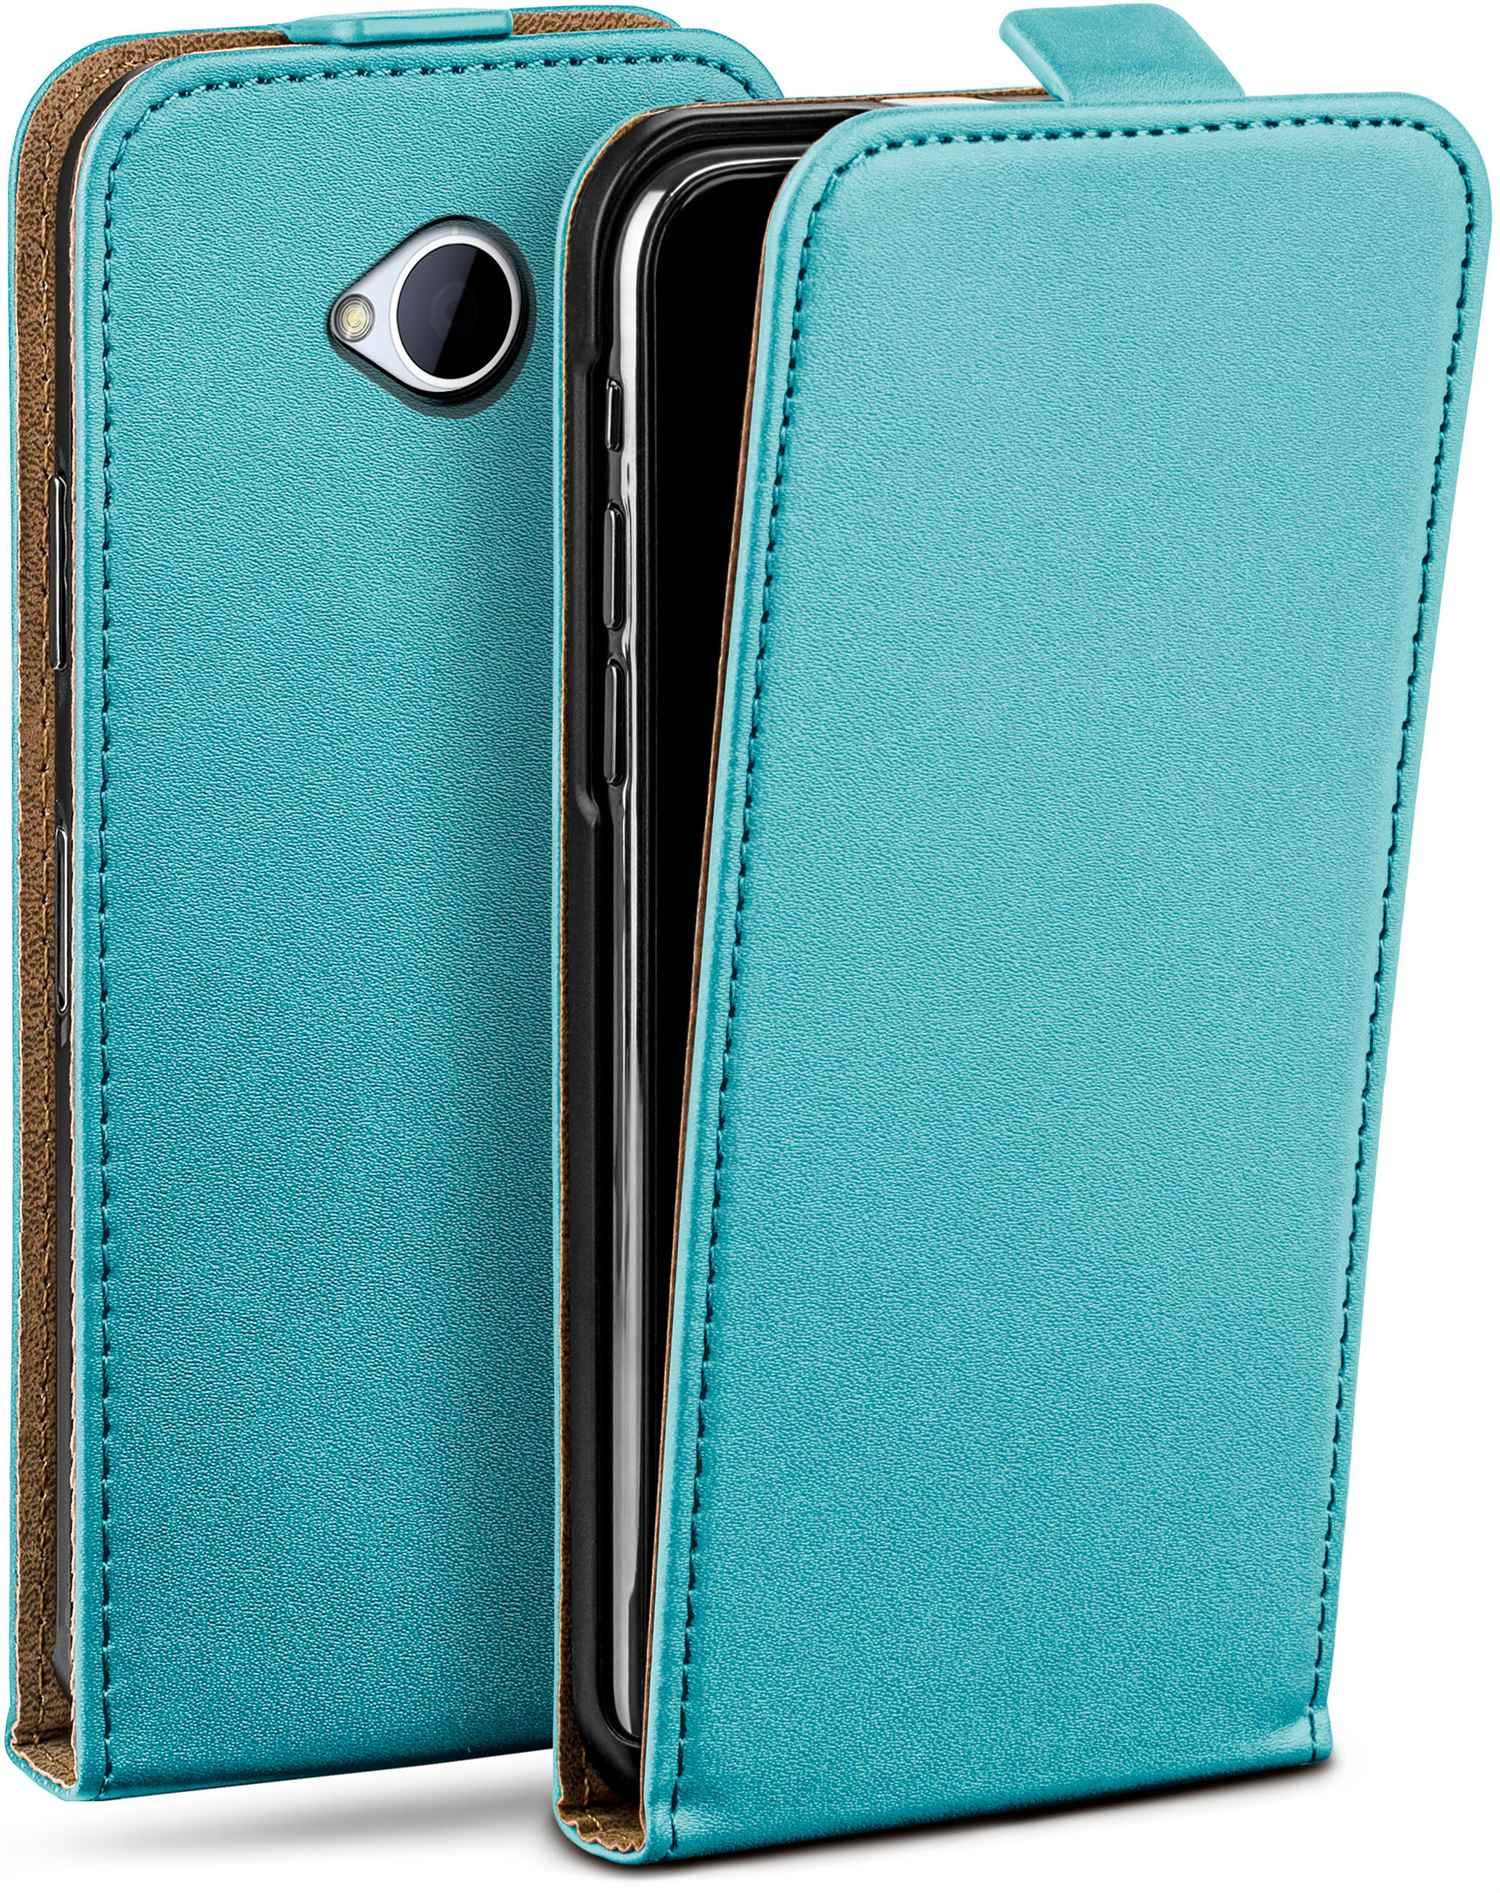 Flip Flip Cover, HTC, Aqua-Cyan MOEX M7, Case, One